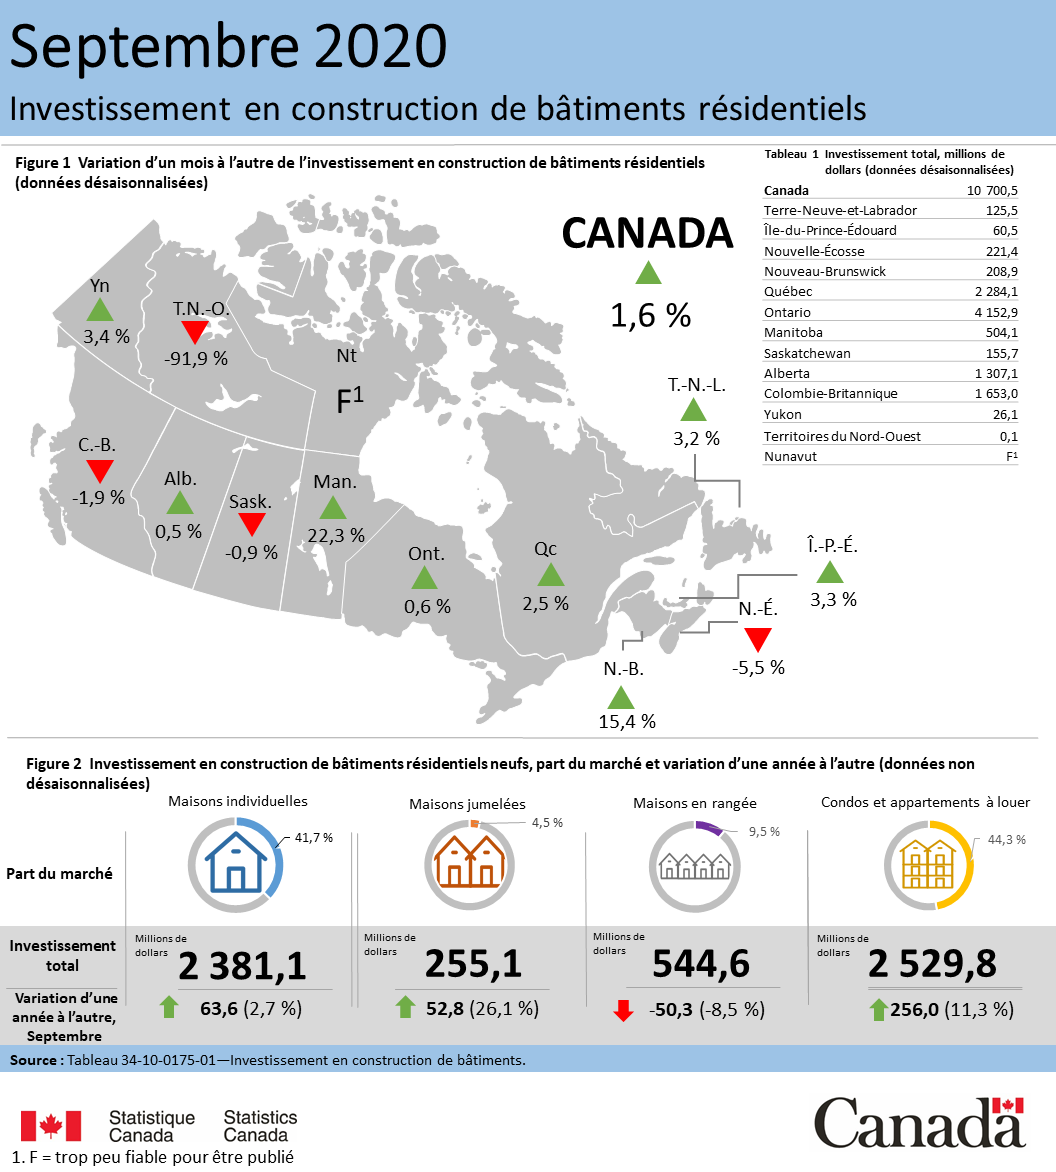 Vignette de l'infographie 2: Investissement en construction de bâtiments résidentiels, septembre 2020